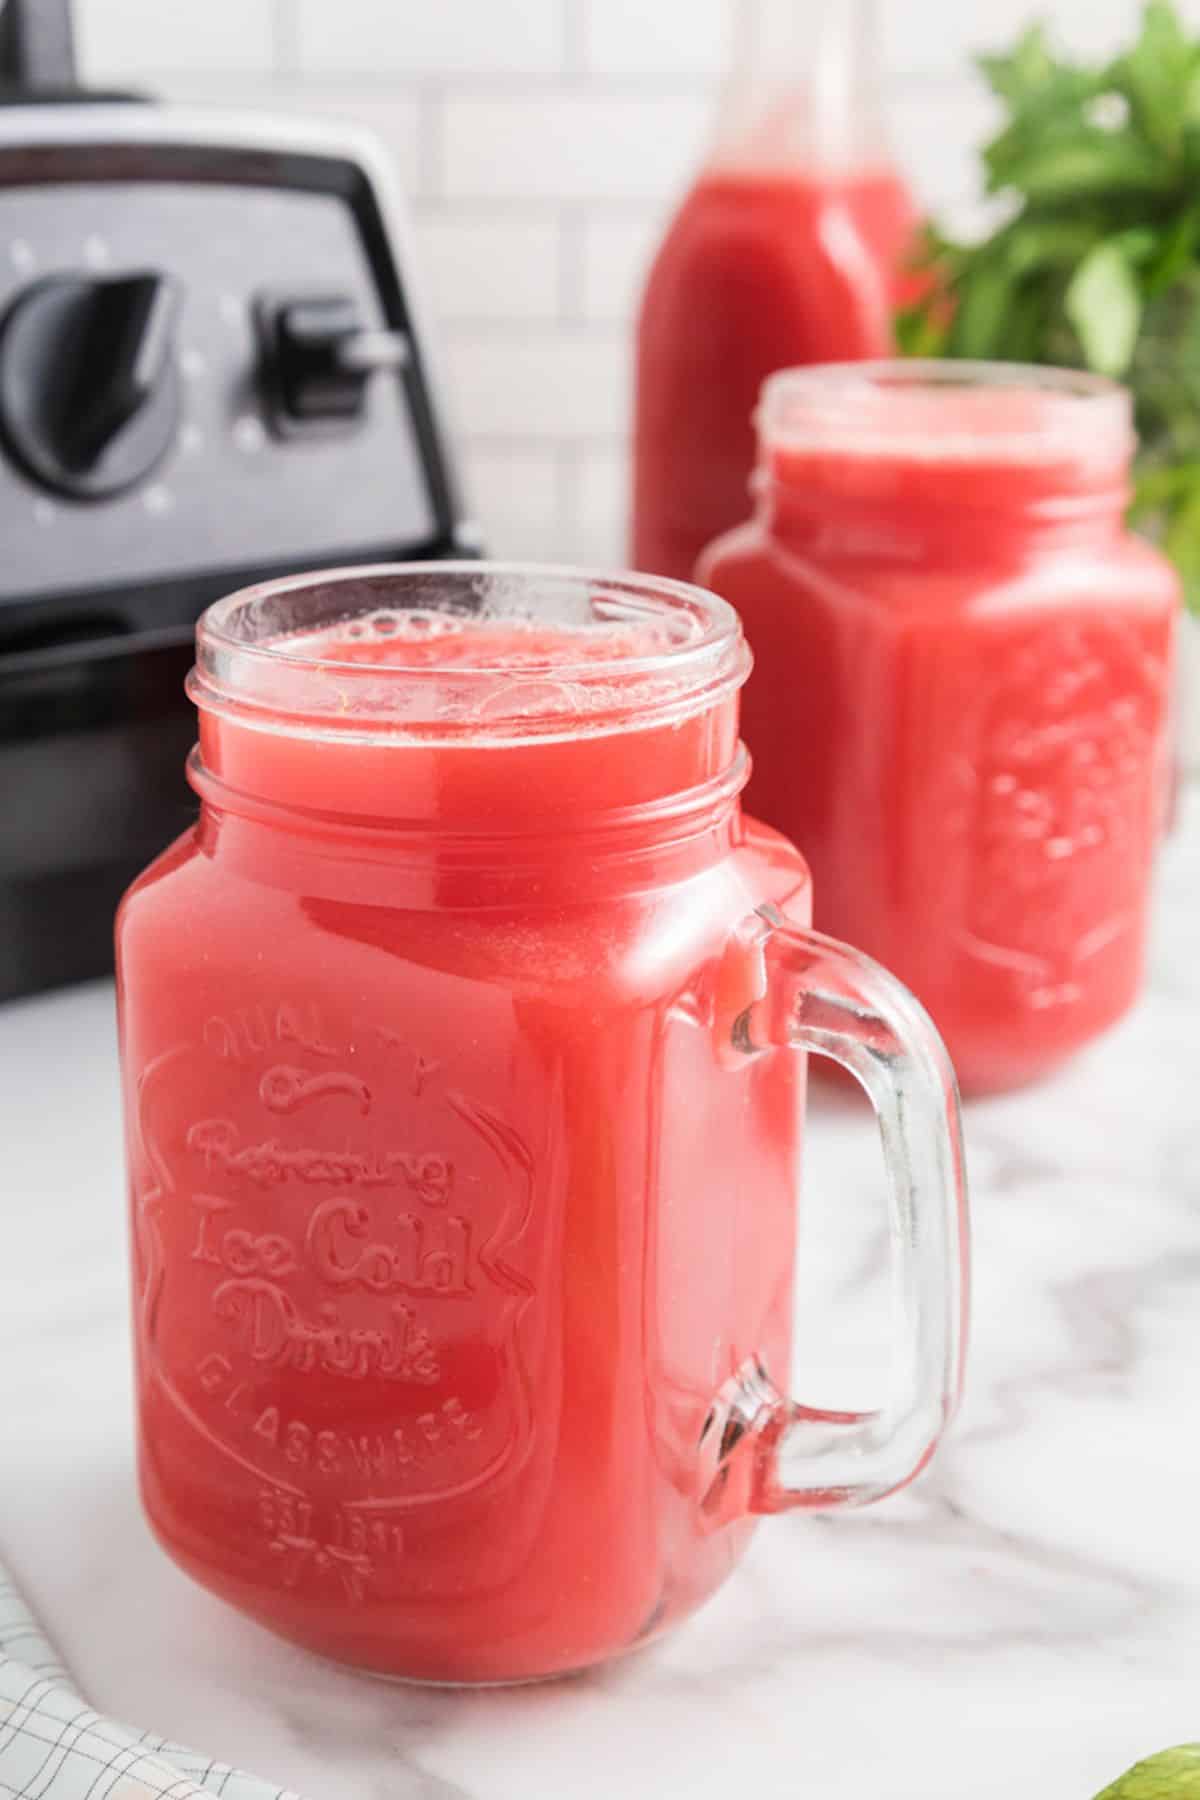 watermelon juice in jar on table.